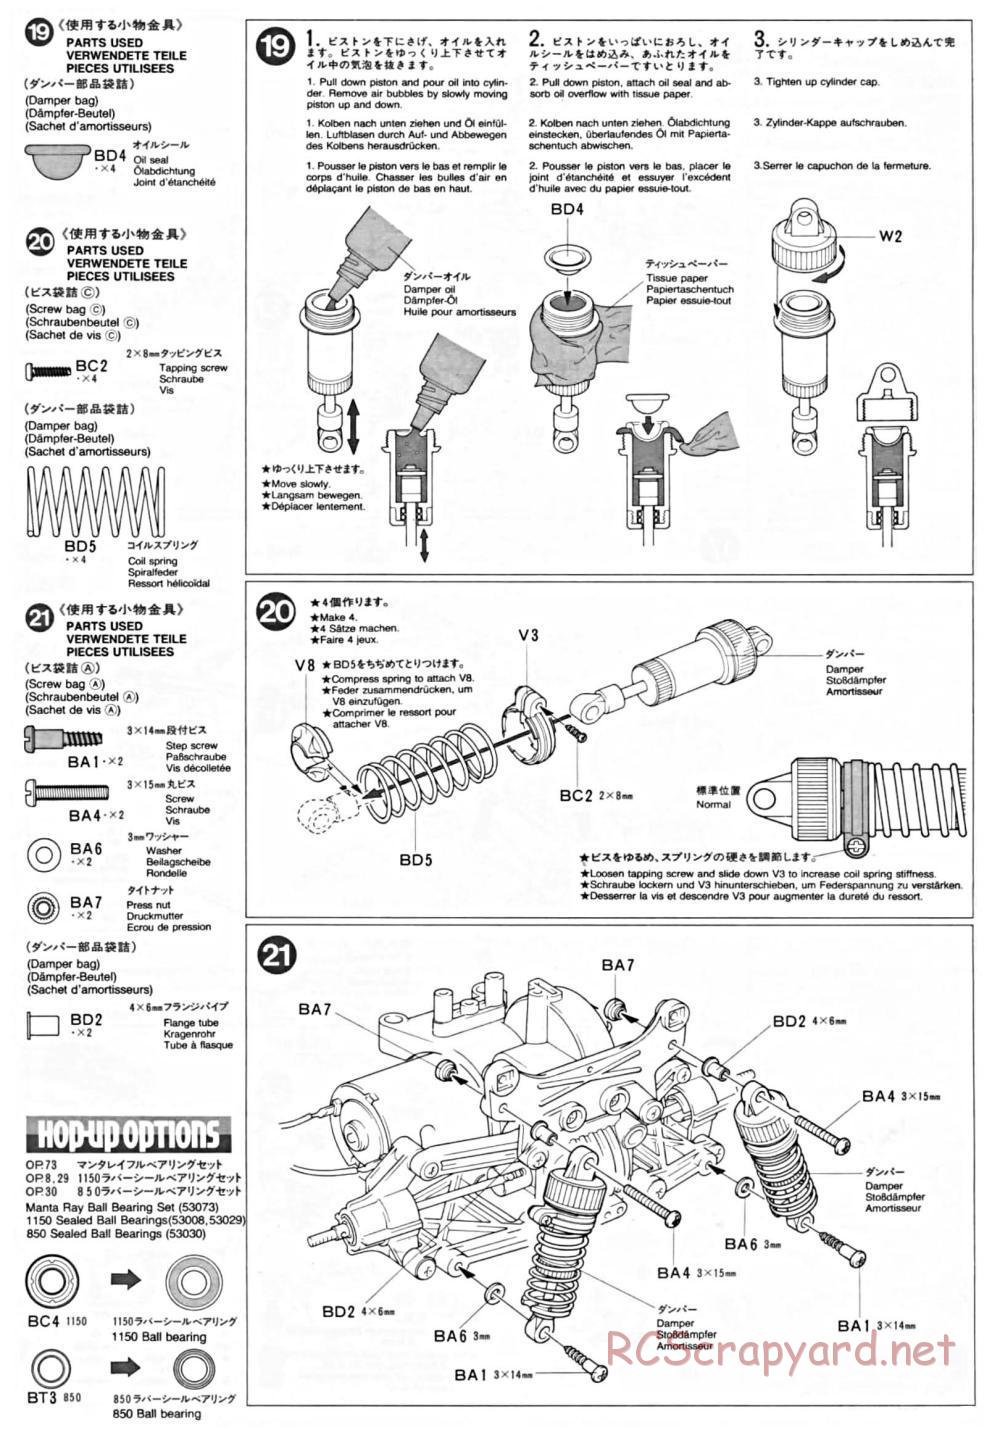 Tamiya - TA-01 Chassis - Manual - Page 7